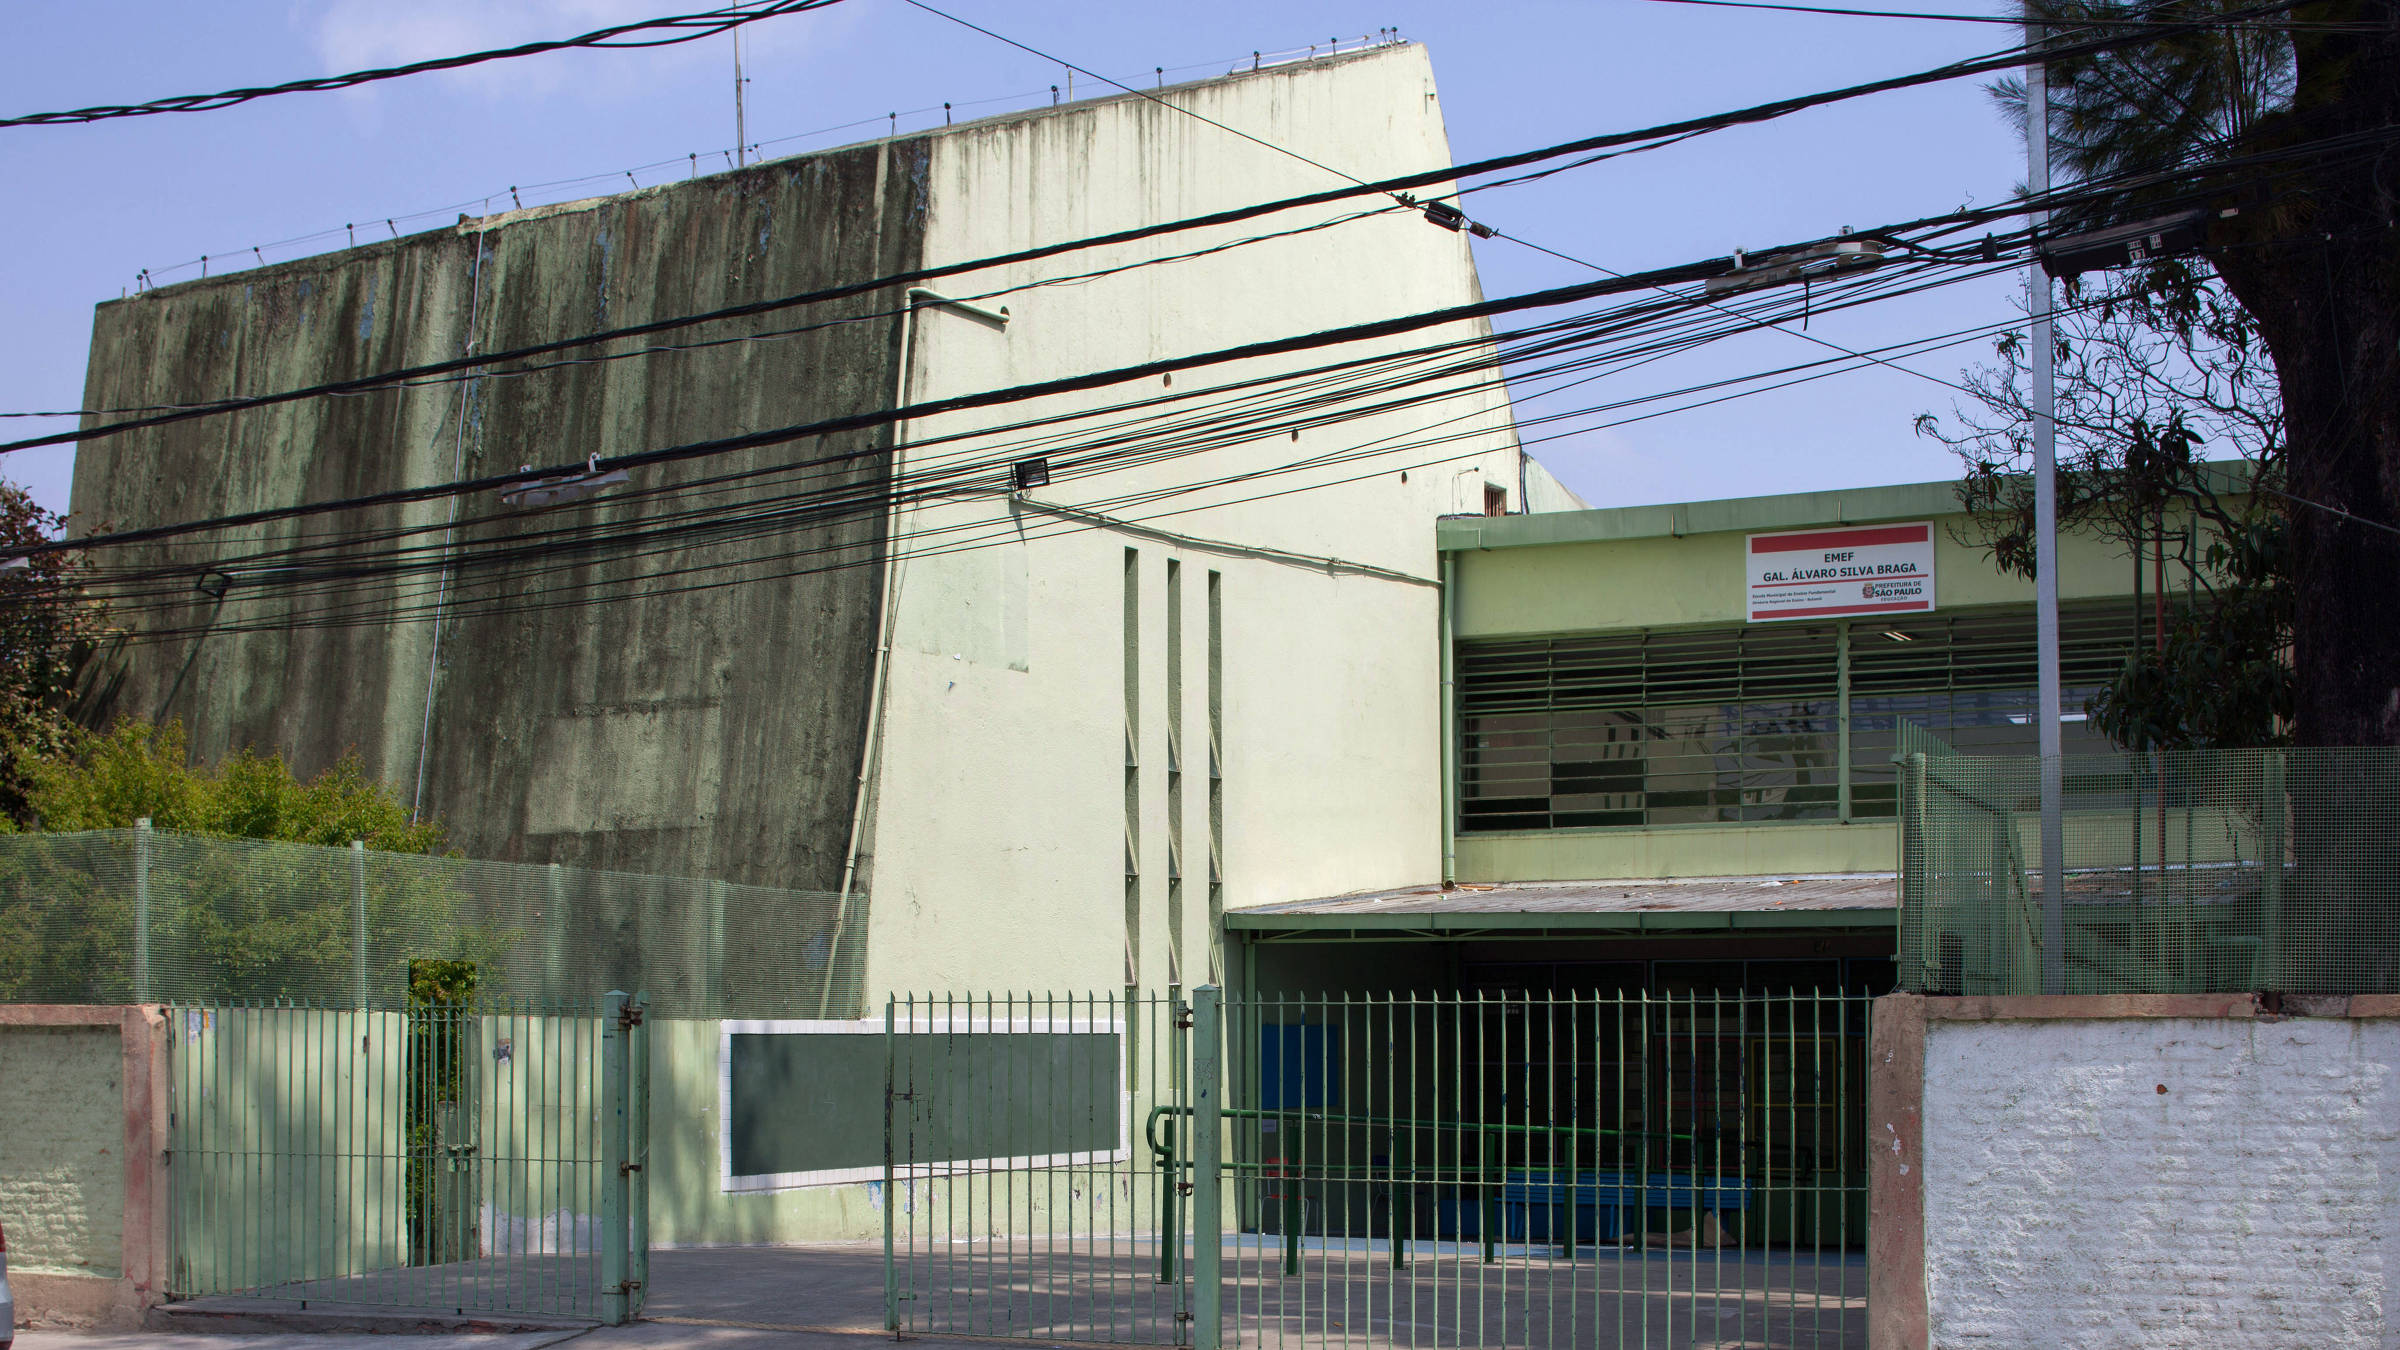 Ensaio da arquitetura dos prédios de escolas públicas na cidade de São Paulo - Fotos Tuca Vieira/Folhapress